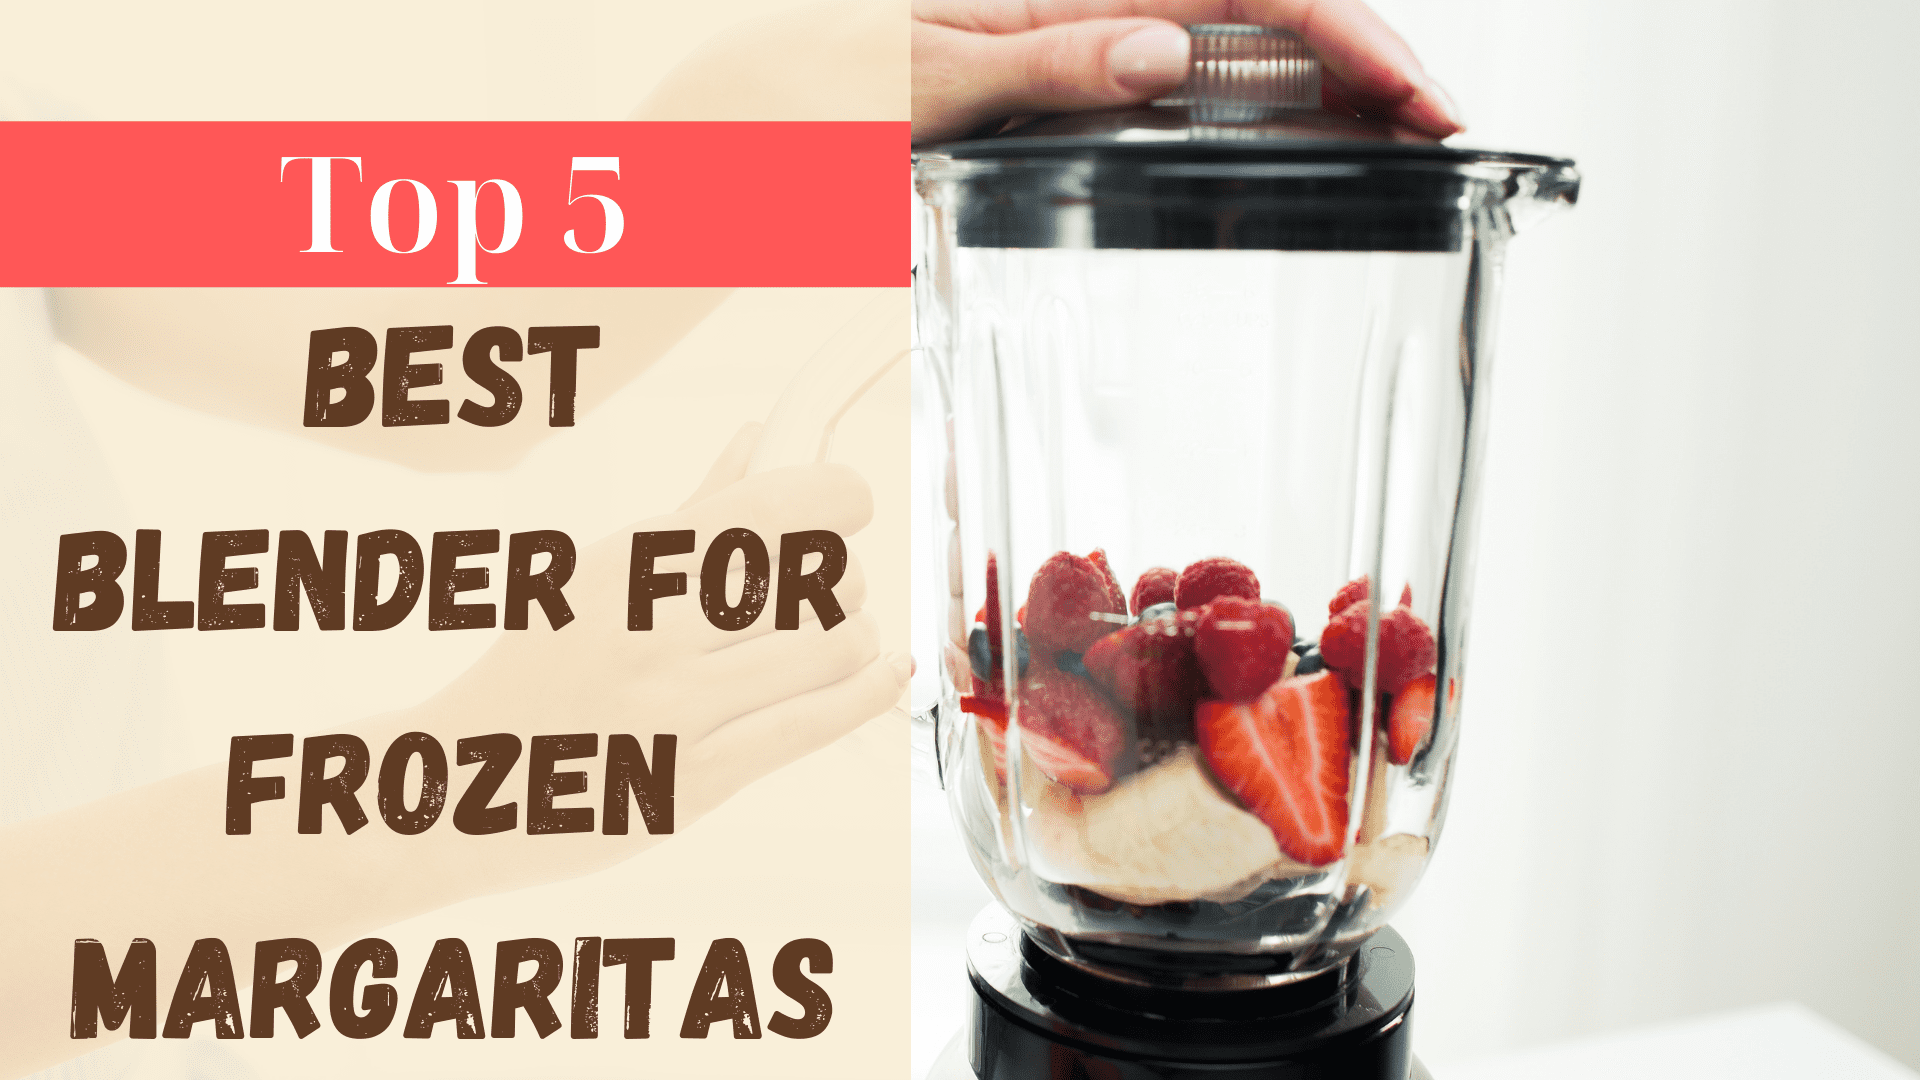 Best blender for frozen margaritas